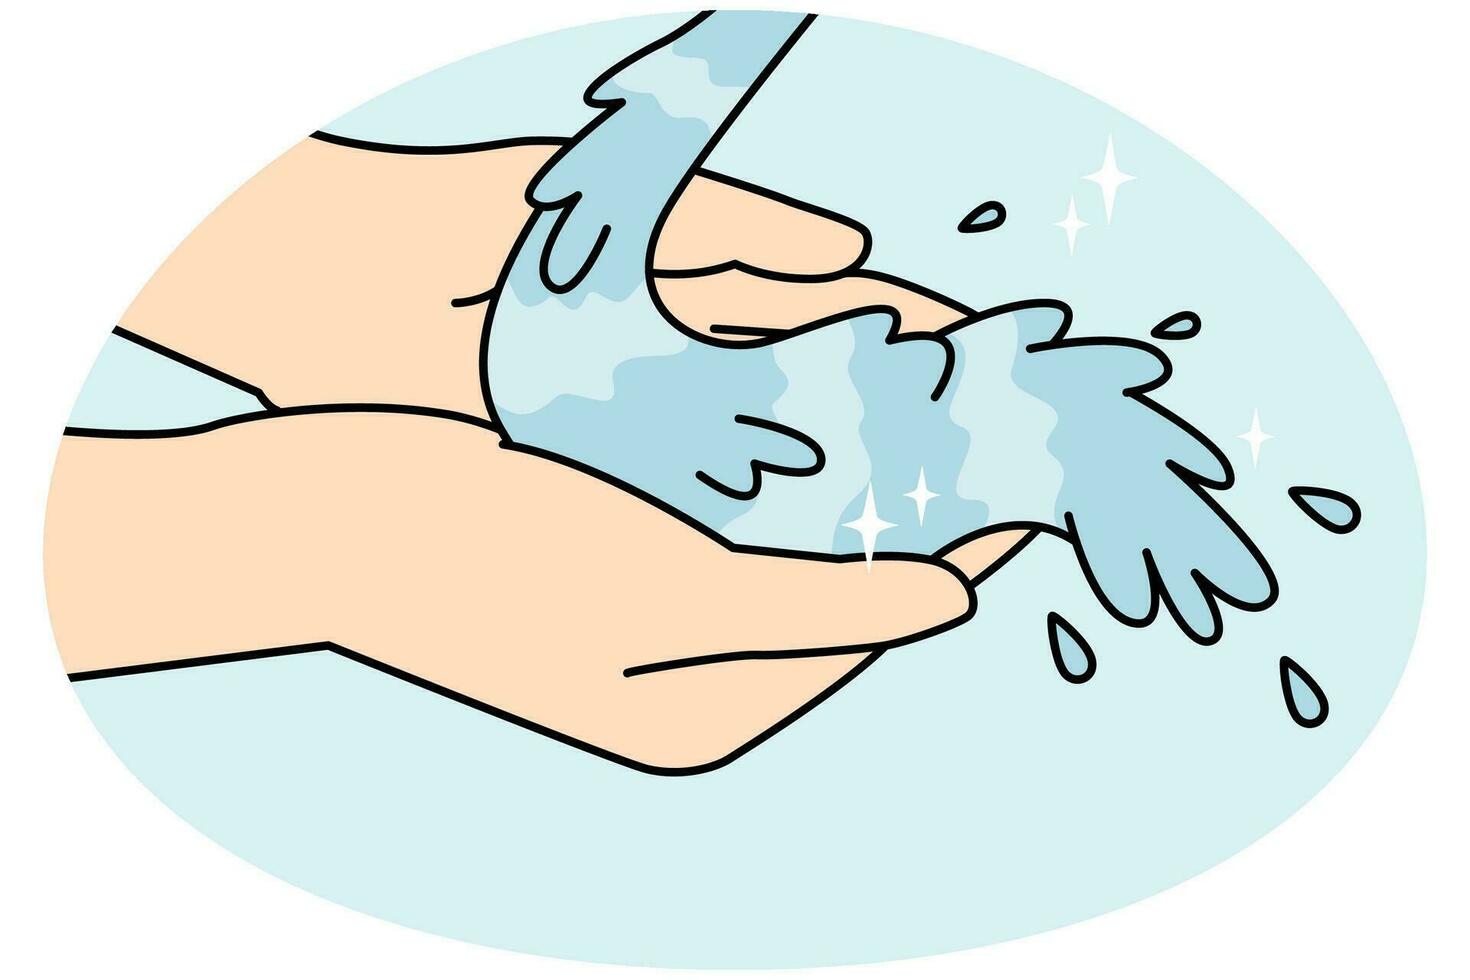 närbild av person händer med rena vatten. man eller kvinna palmer tvättning under klar kran eller ström vatten. vektor illustration. . vektor illustration